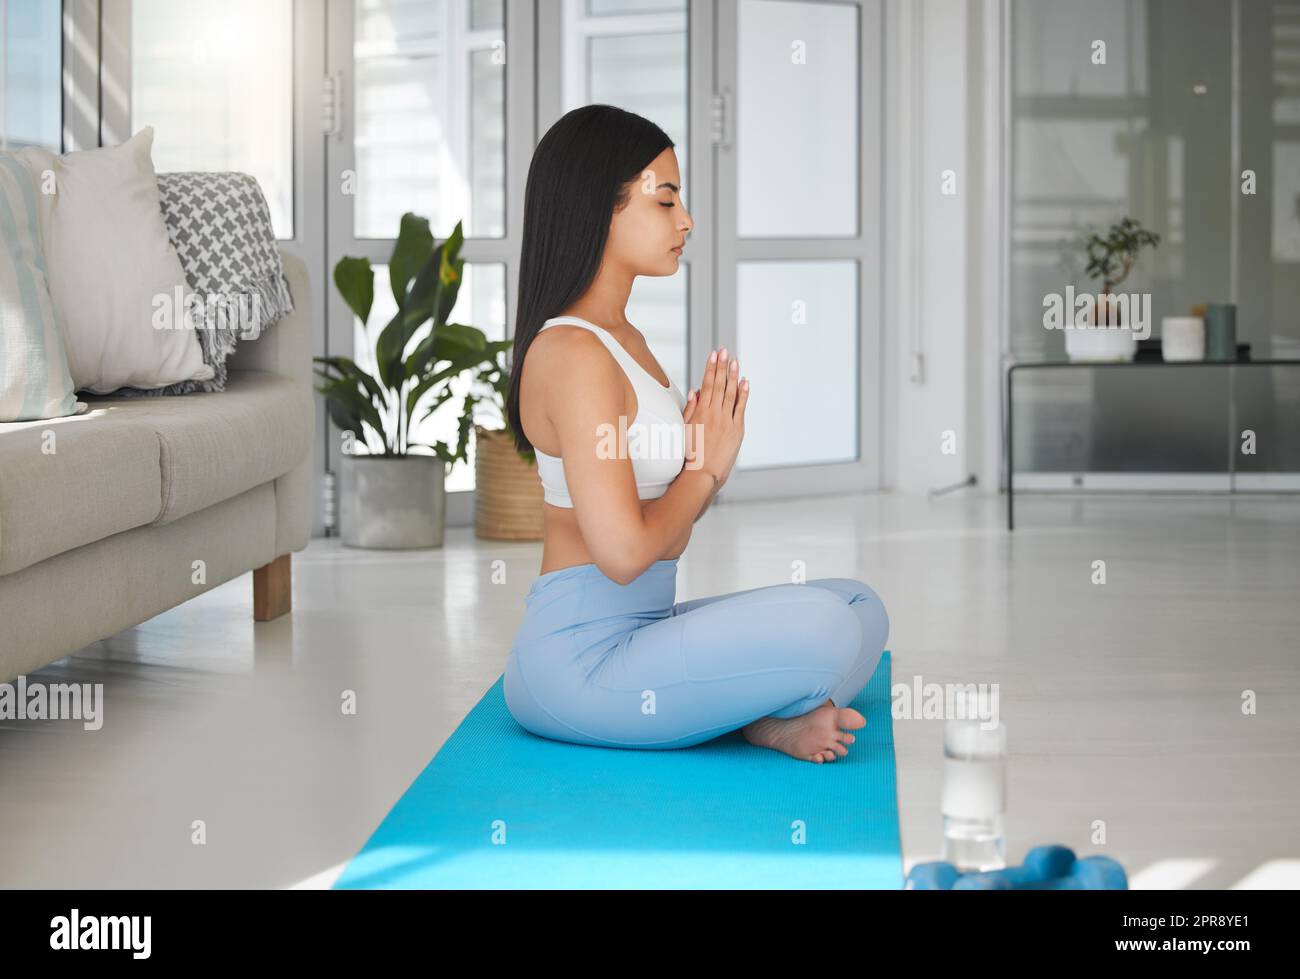 Treiben Sie sich geistig, körperlich und geistig an. Eine sportliche junge Frau meditiert während sie zu Hause Yoga praktiziert. Stockfoto